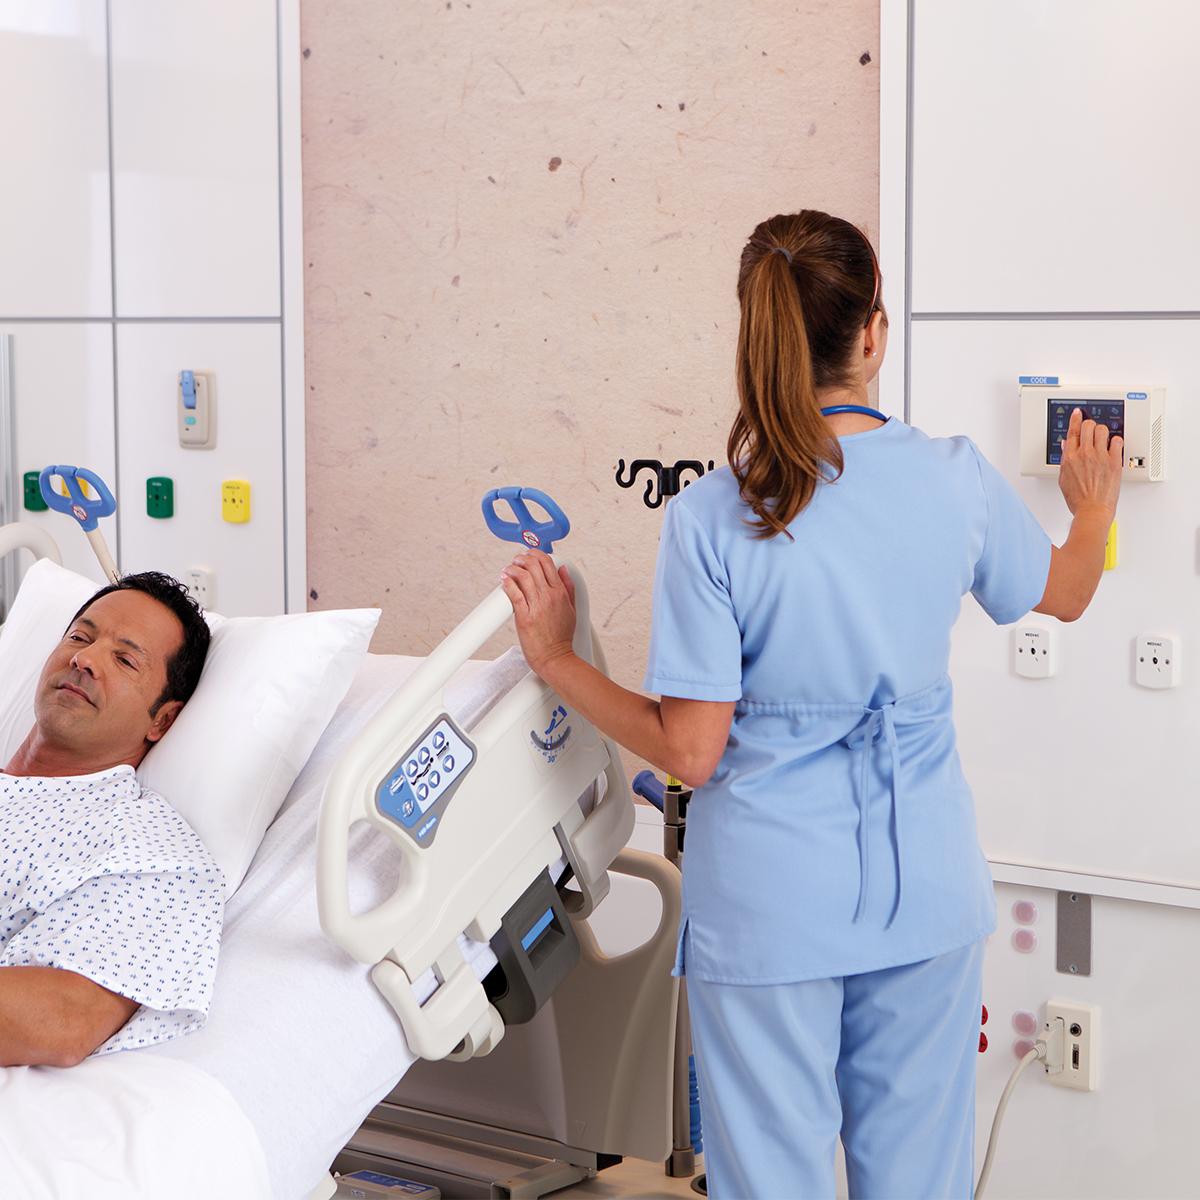 Infirmière interagissant avec un écran mural à côté d'un patient